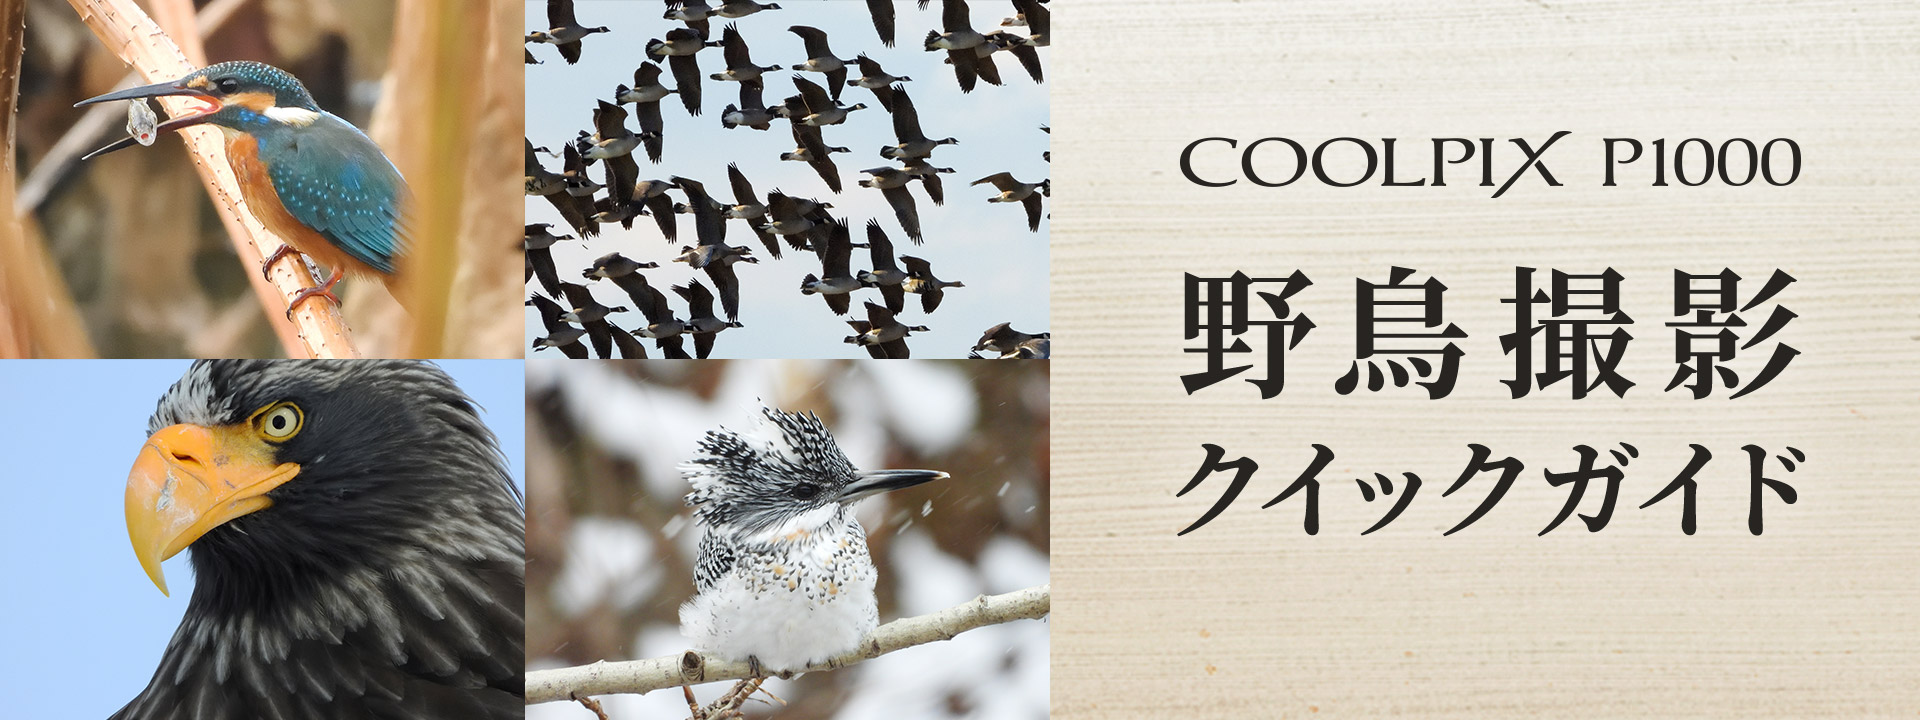 COOLPIX P1000 野鳥撮影クイックガイド